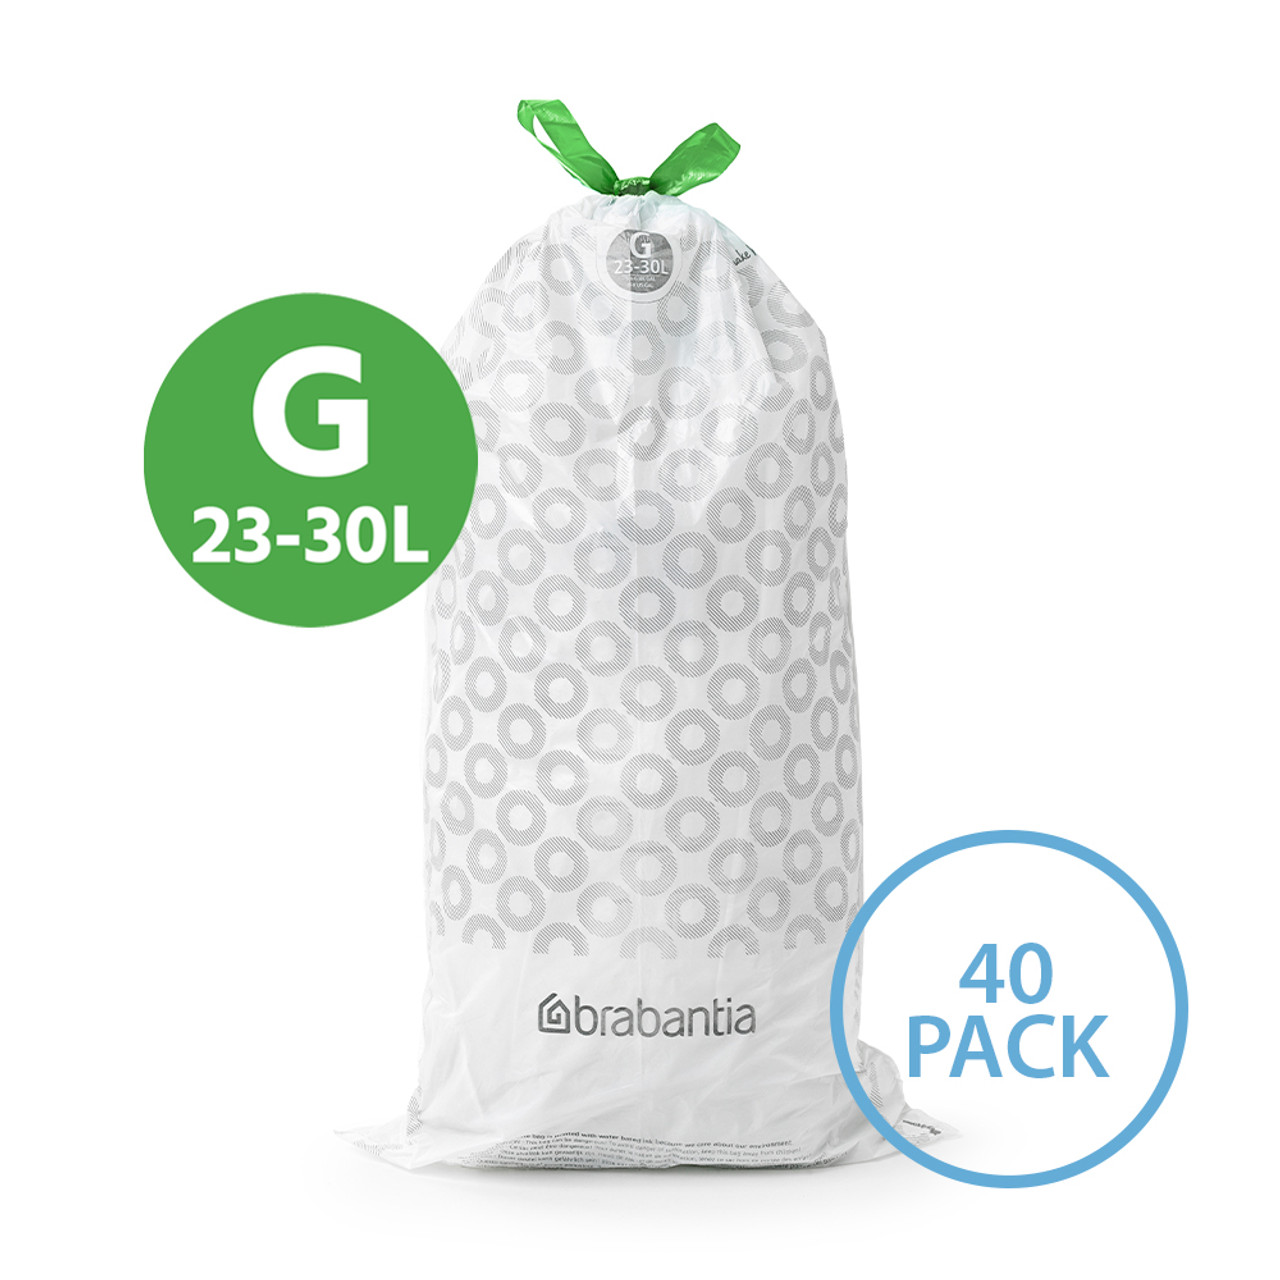 brabantia PerfectFit Bin Bags 30L Code G - 40 Pack